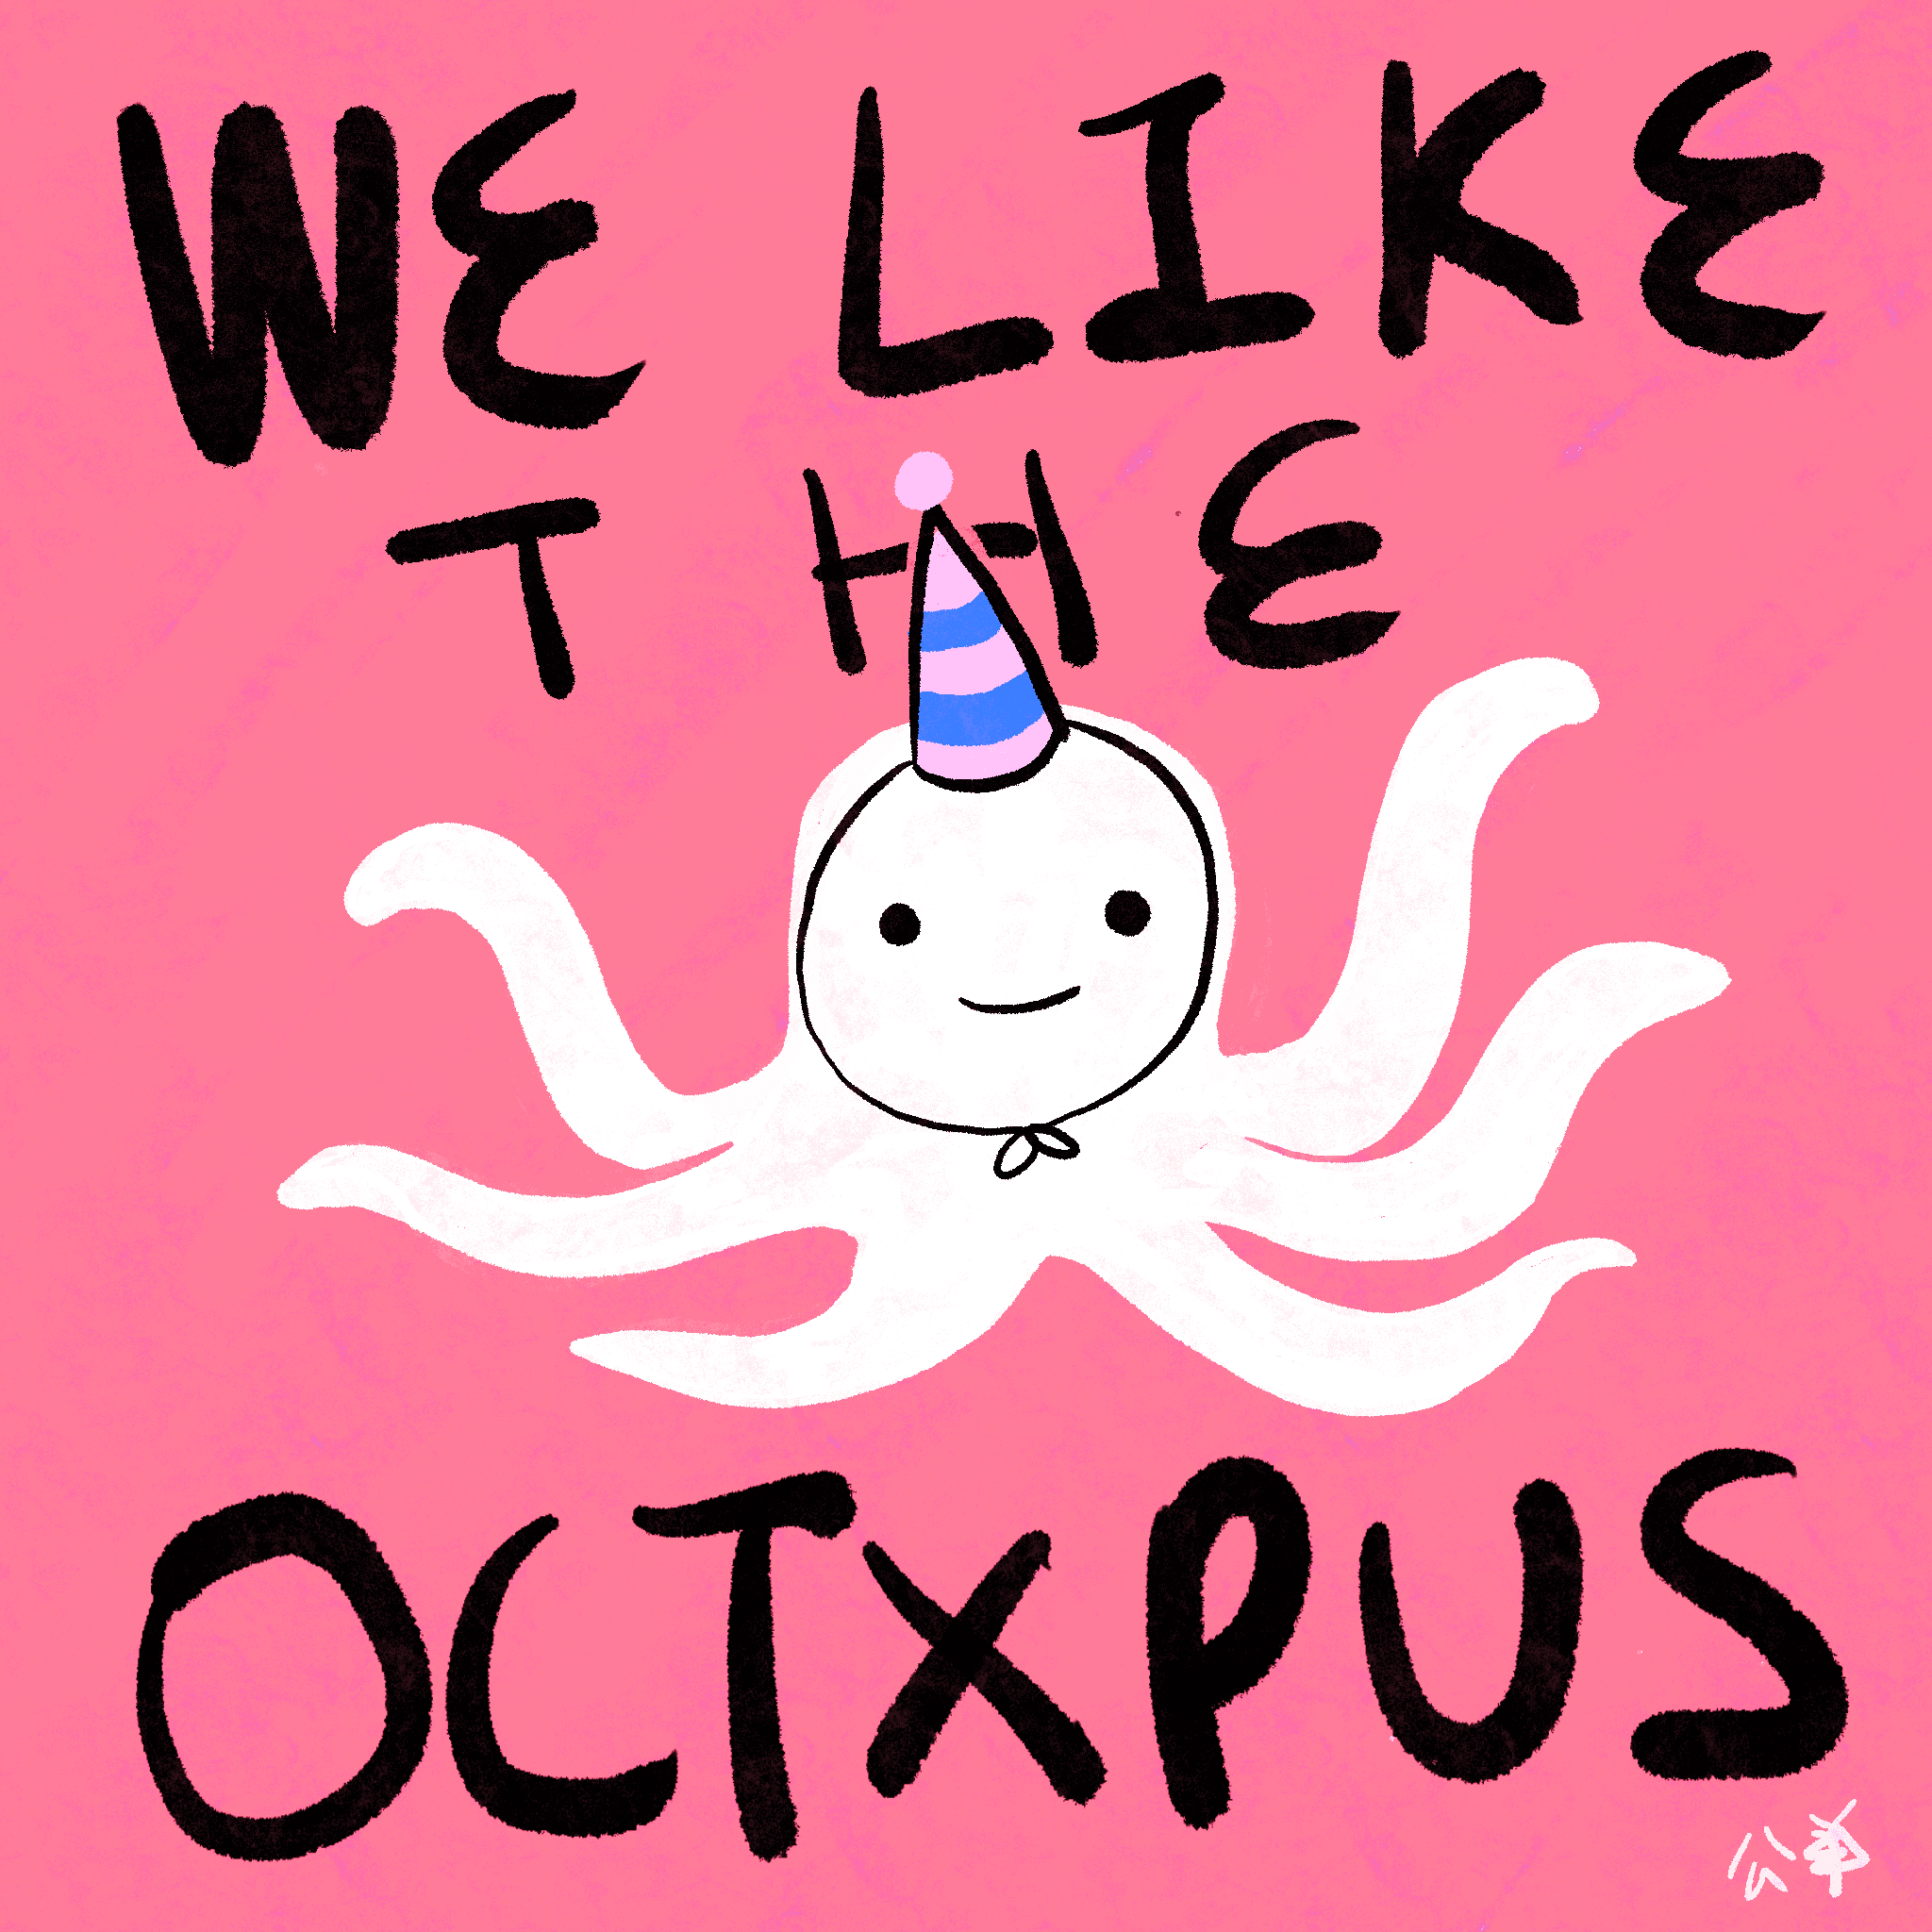 Octxpus Zxxdiac